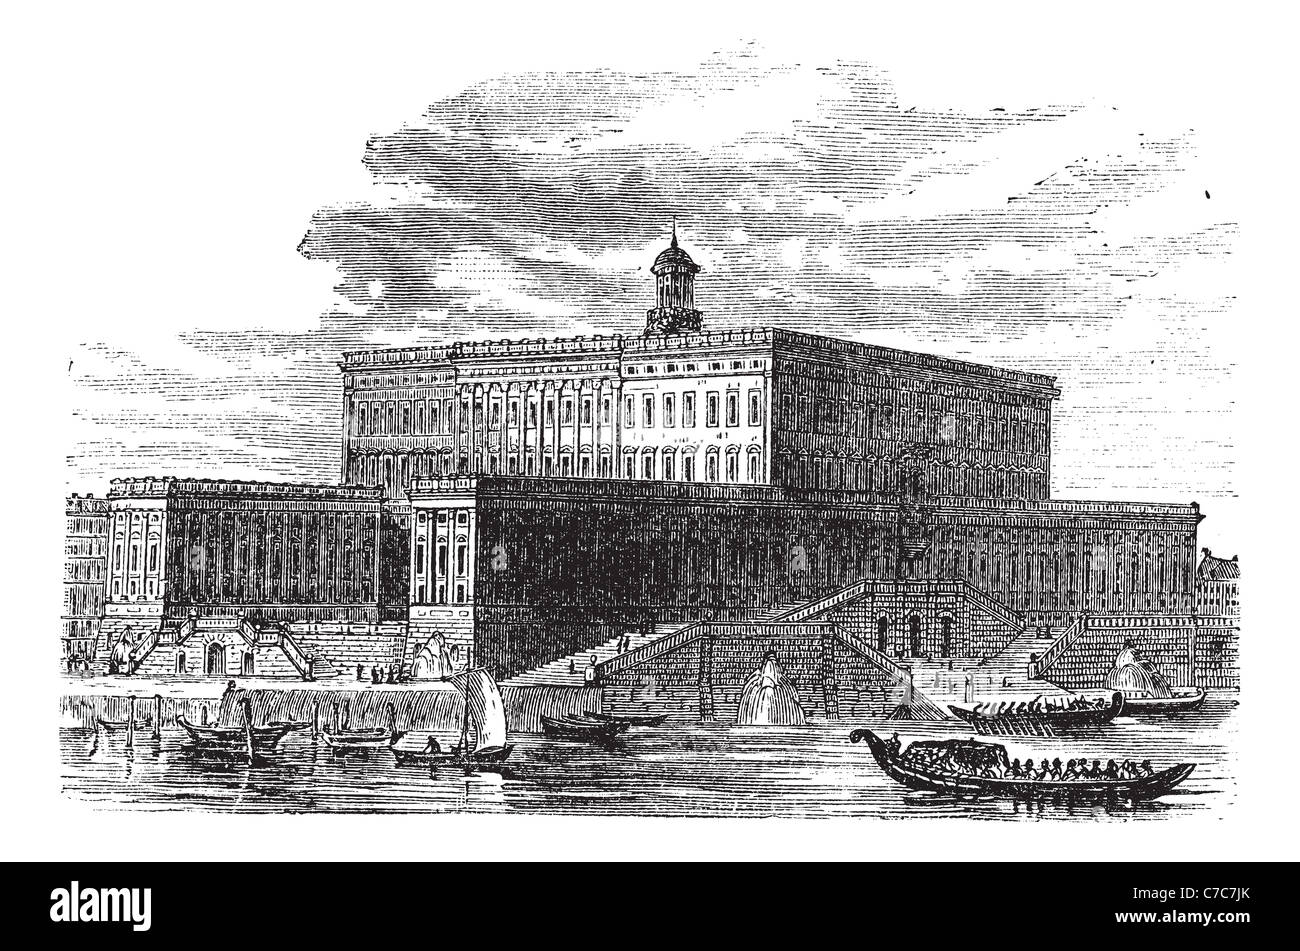 En Stadsholmen Palacio de Estocolmo, Suecia, durante la década de 1890, vintage grabado. Ilustración grabada antiguo Palacio de Estocolmo. Foto de stock